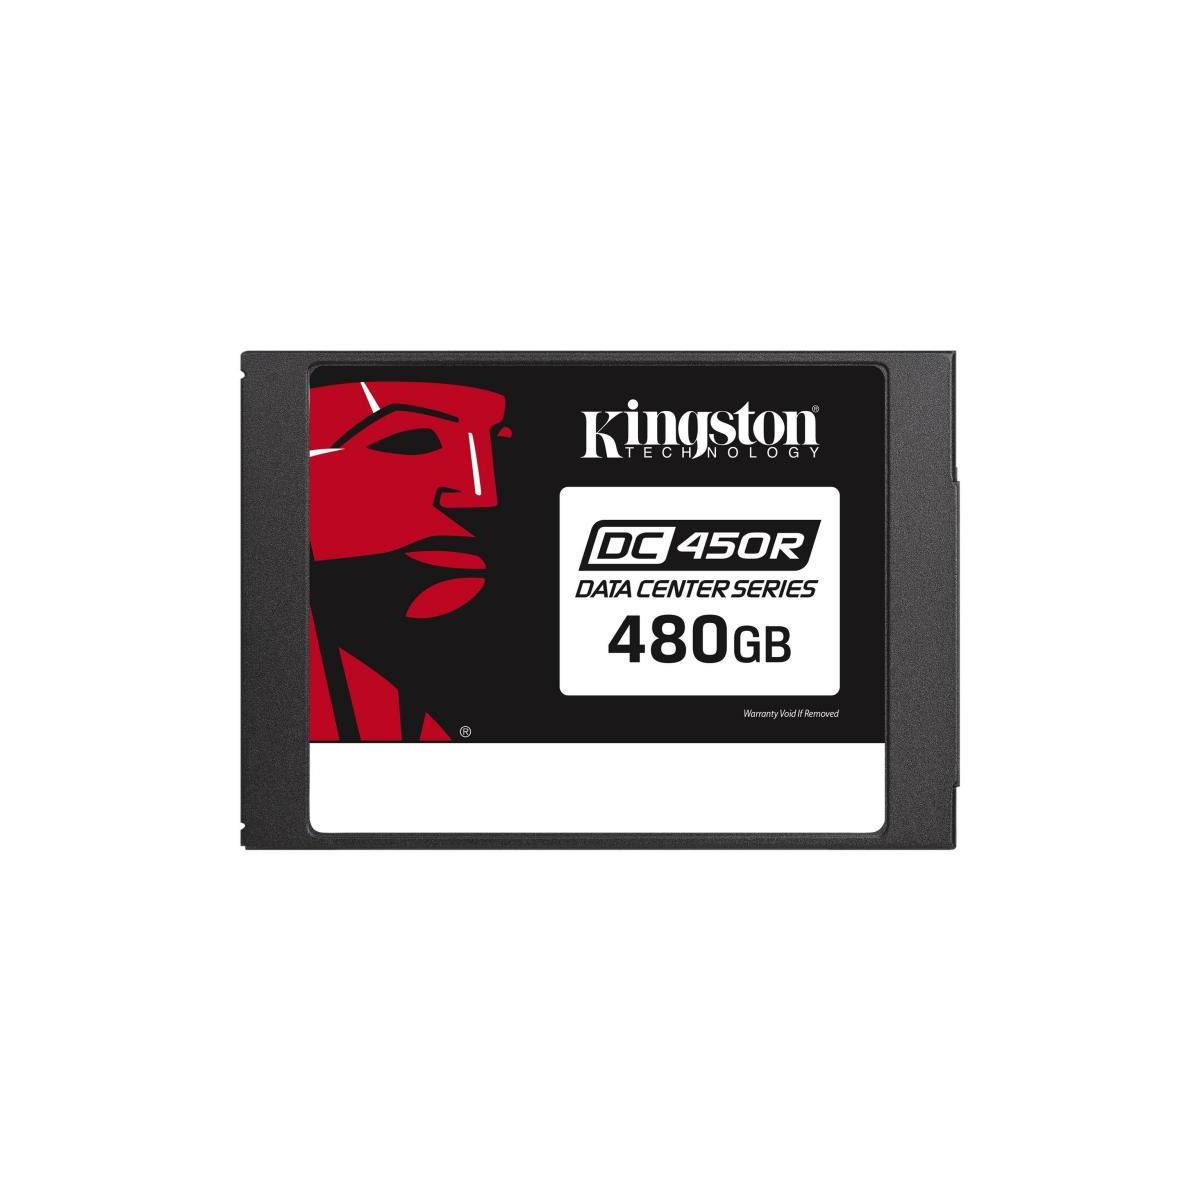 intern, intern KINGSTON (SSD - Data verschlüsselt), DC450R GB, Kingston 2,5 480GB 6Gb/s, Center Zoll, 480 SSD, SATA